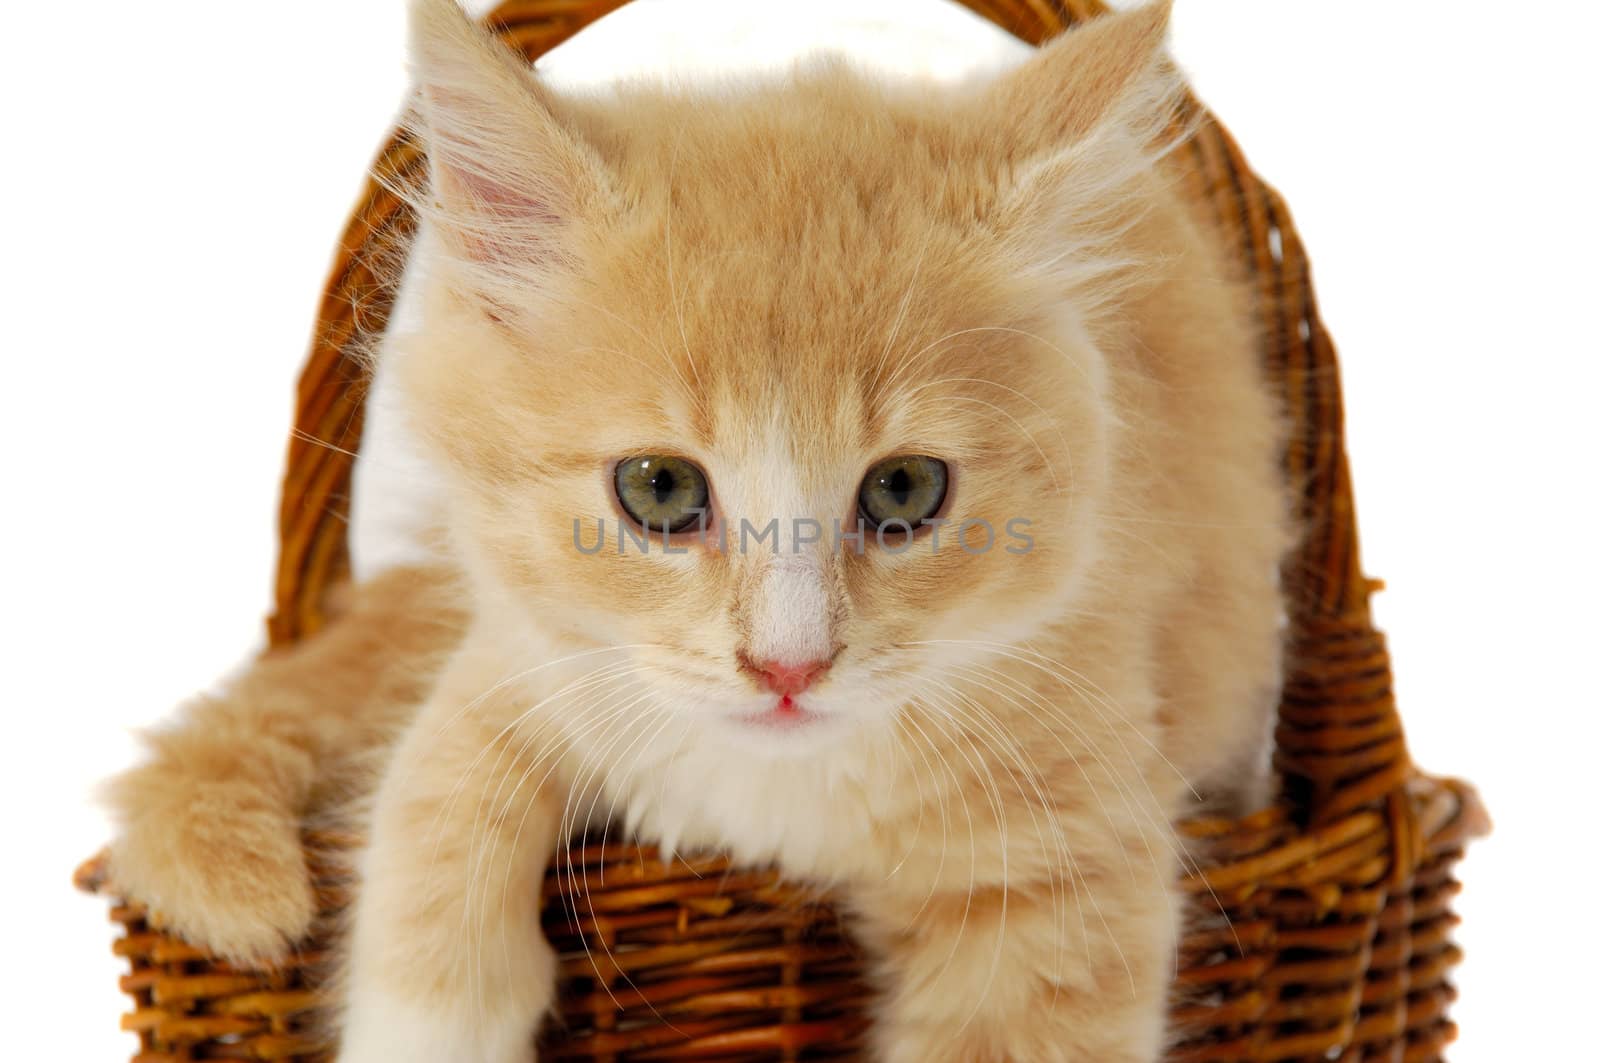 Sweet kitten resting in basket